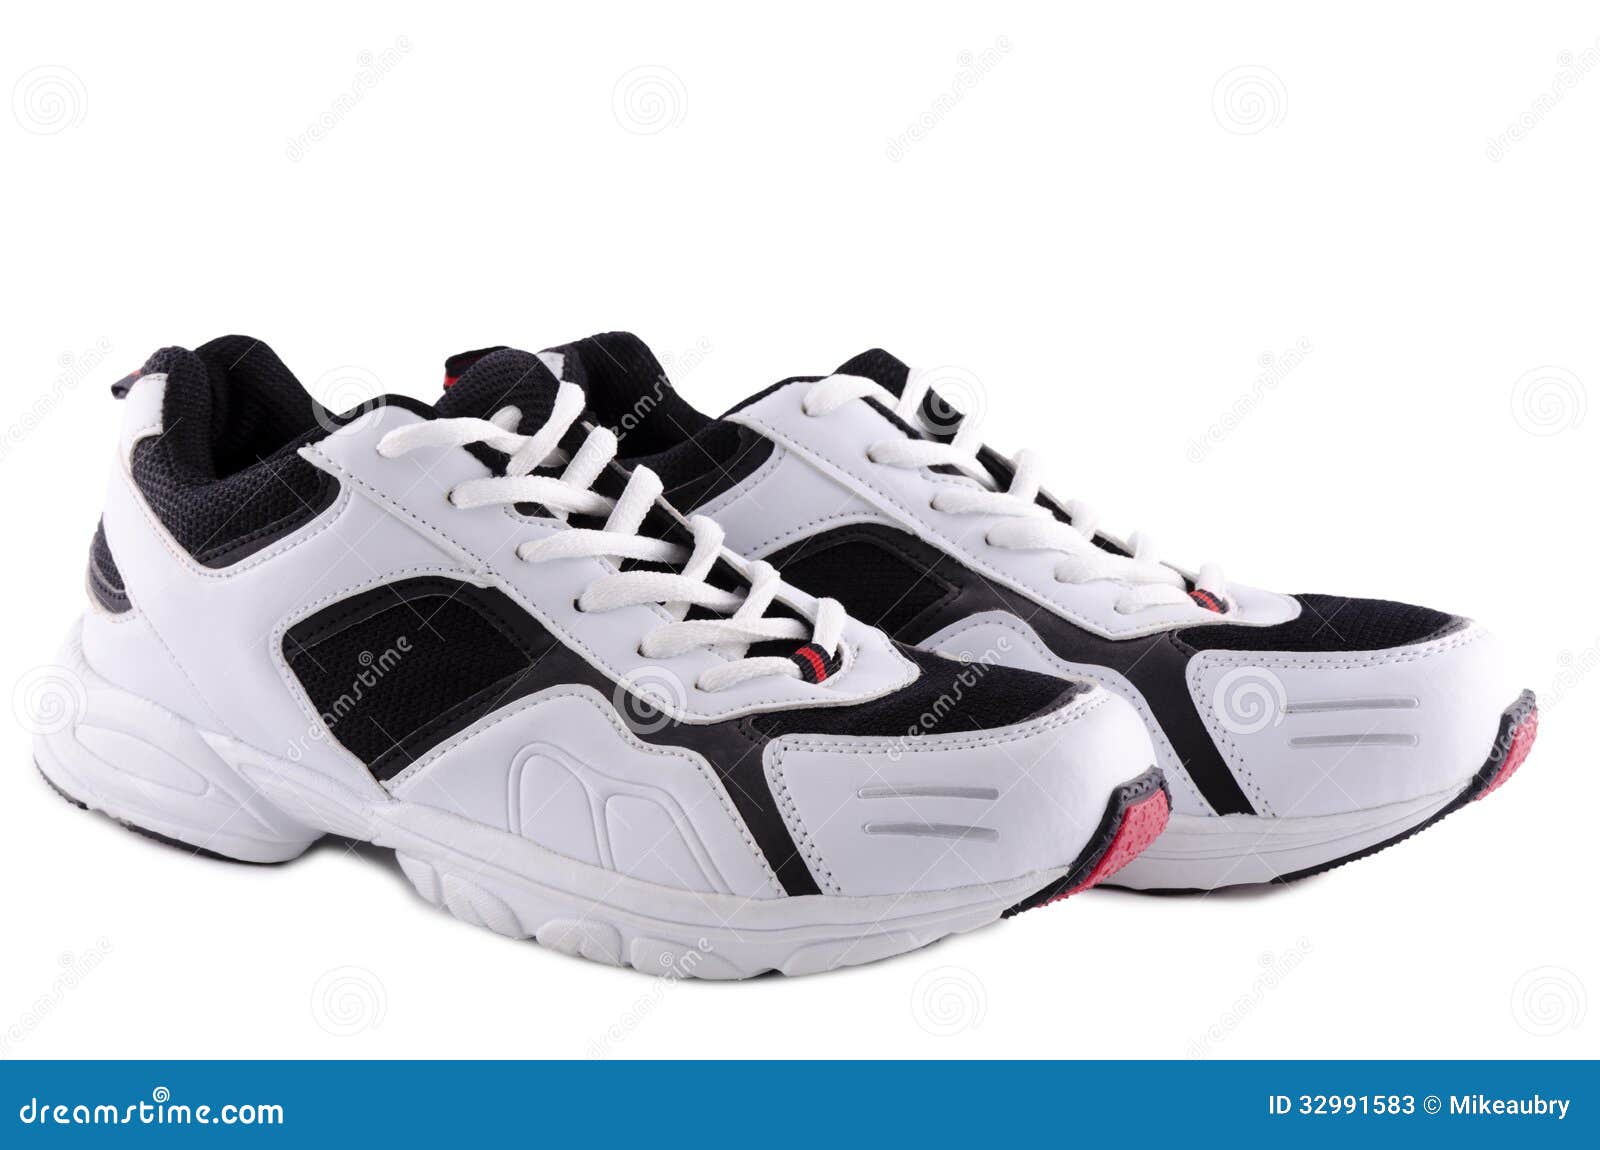 Running shoes stock image. Image of clothing, background - 32991583